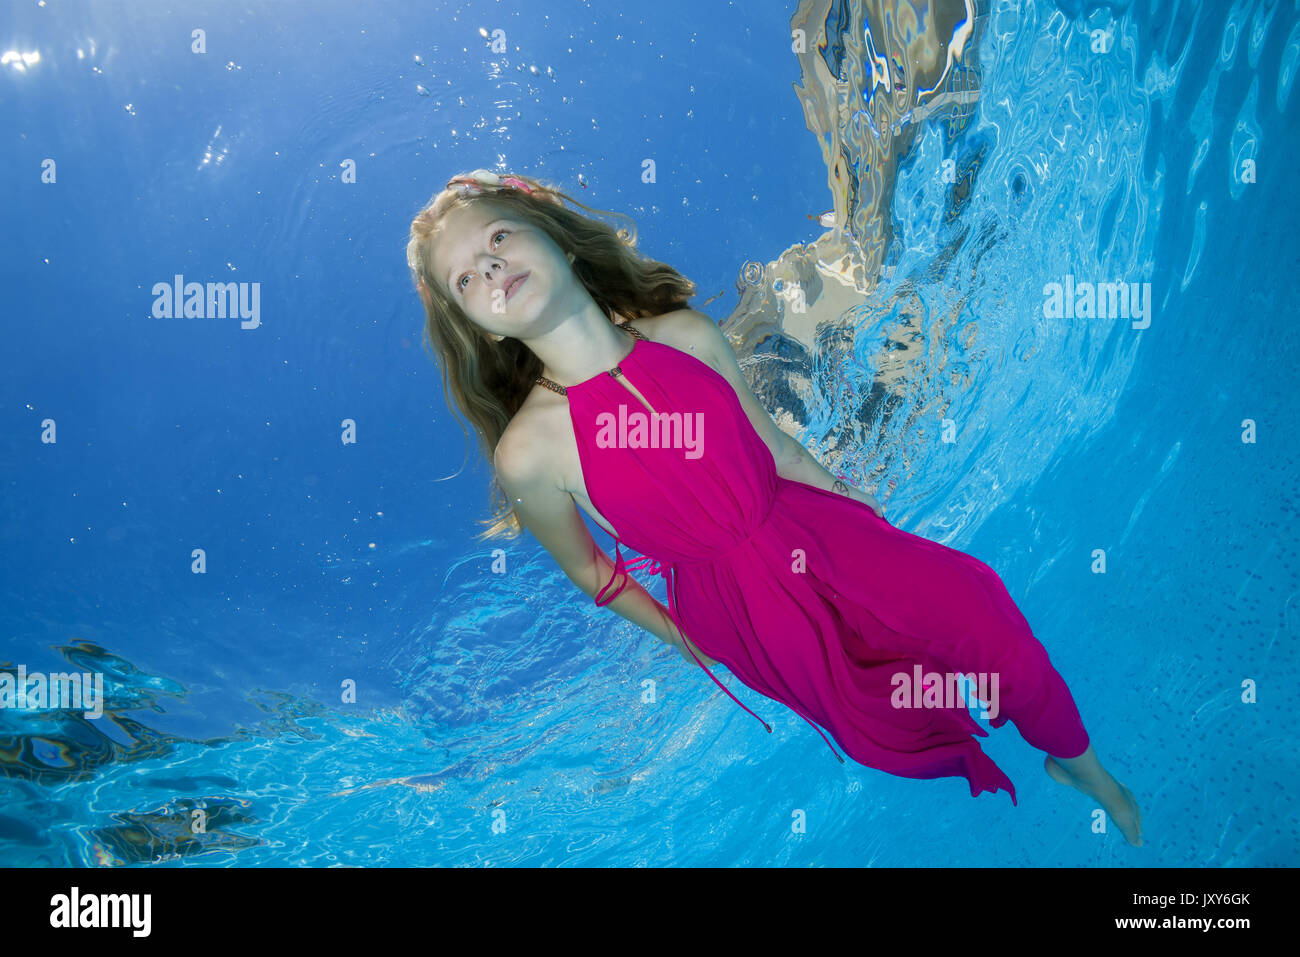 Ein Junges Mädchen In Einem Rosa Kleid Unter Wasser In Einem Pool Posiert Stockfotografie Alamy